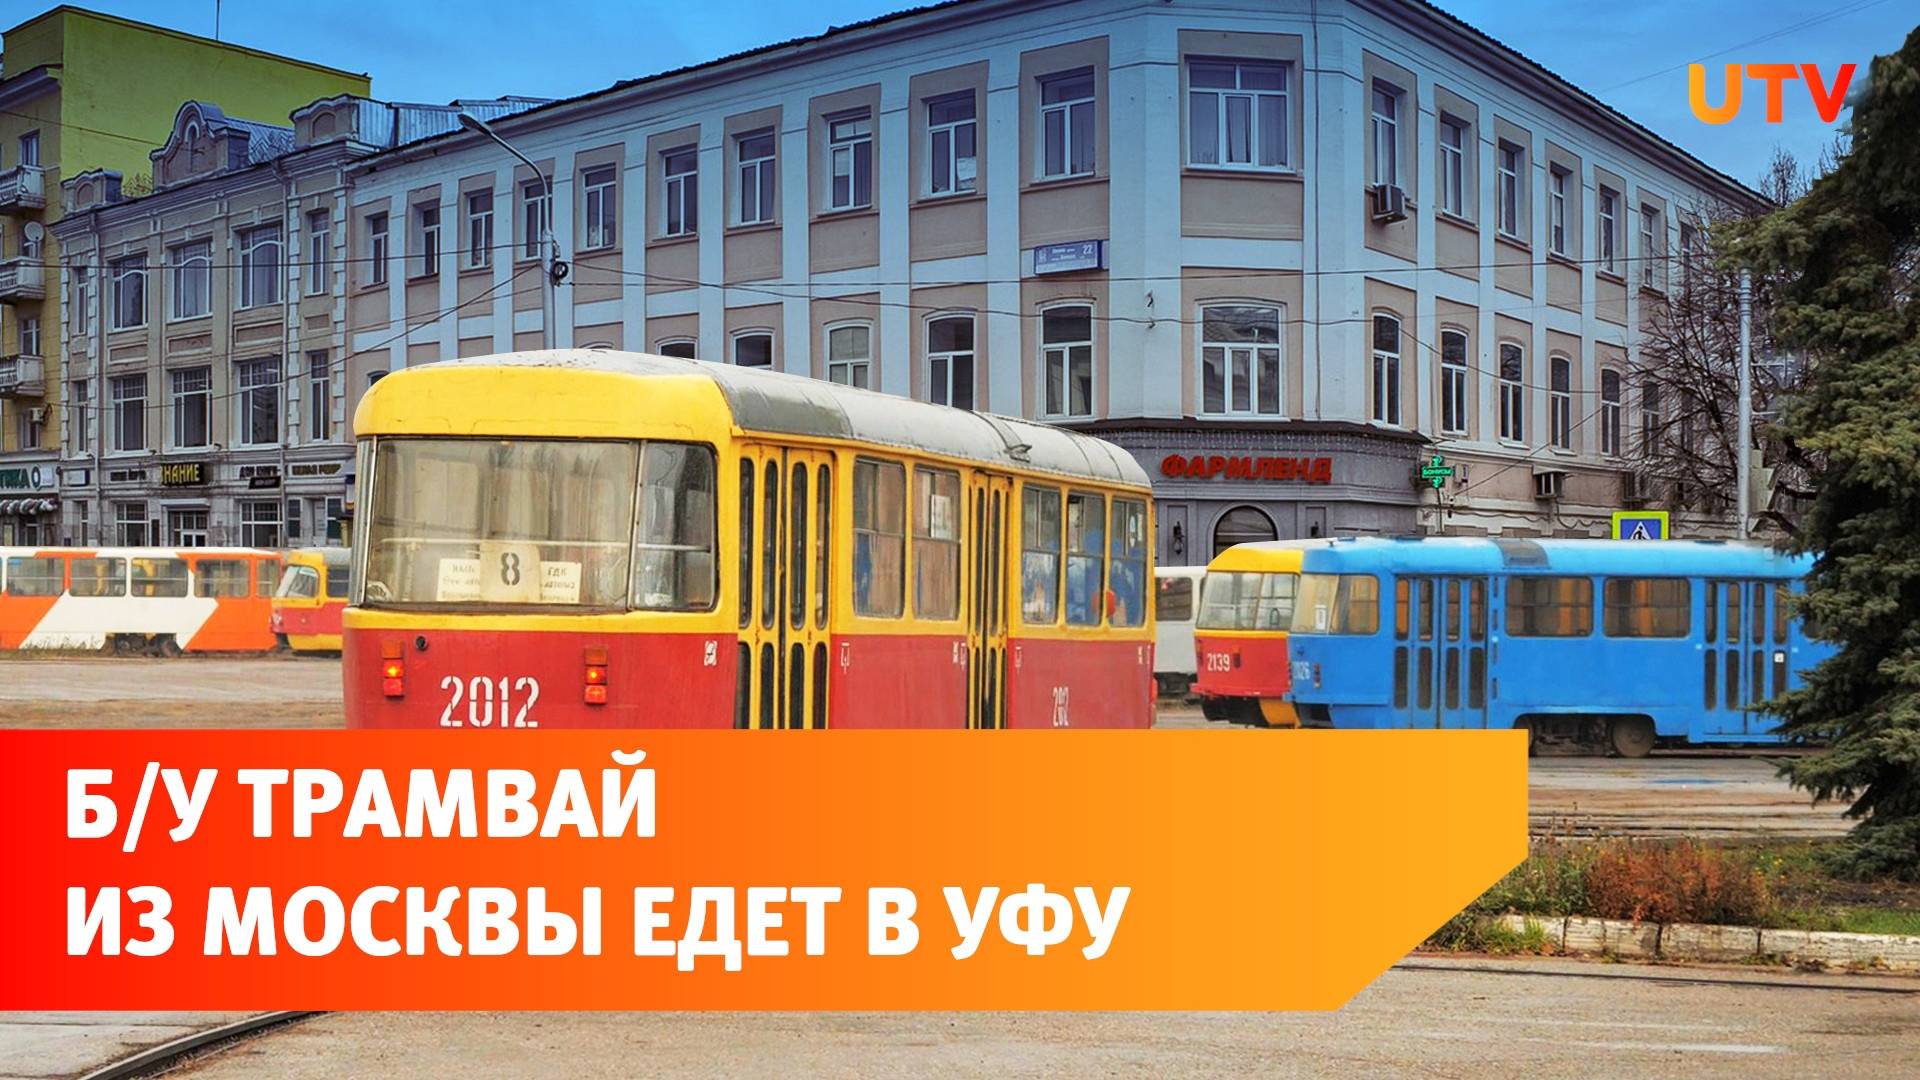 Уфа заплатит за перевозку трамваев из Москвы 25 миллионов